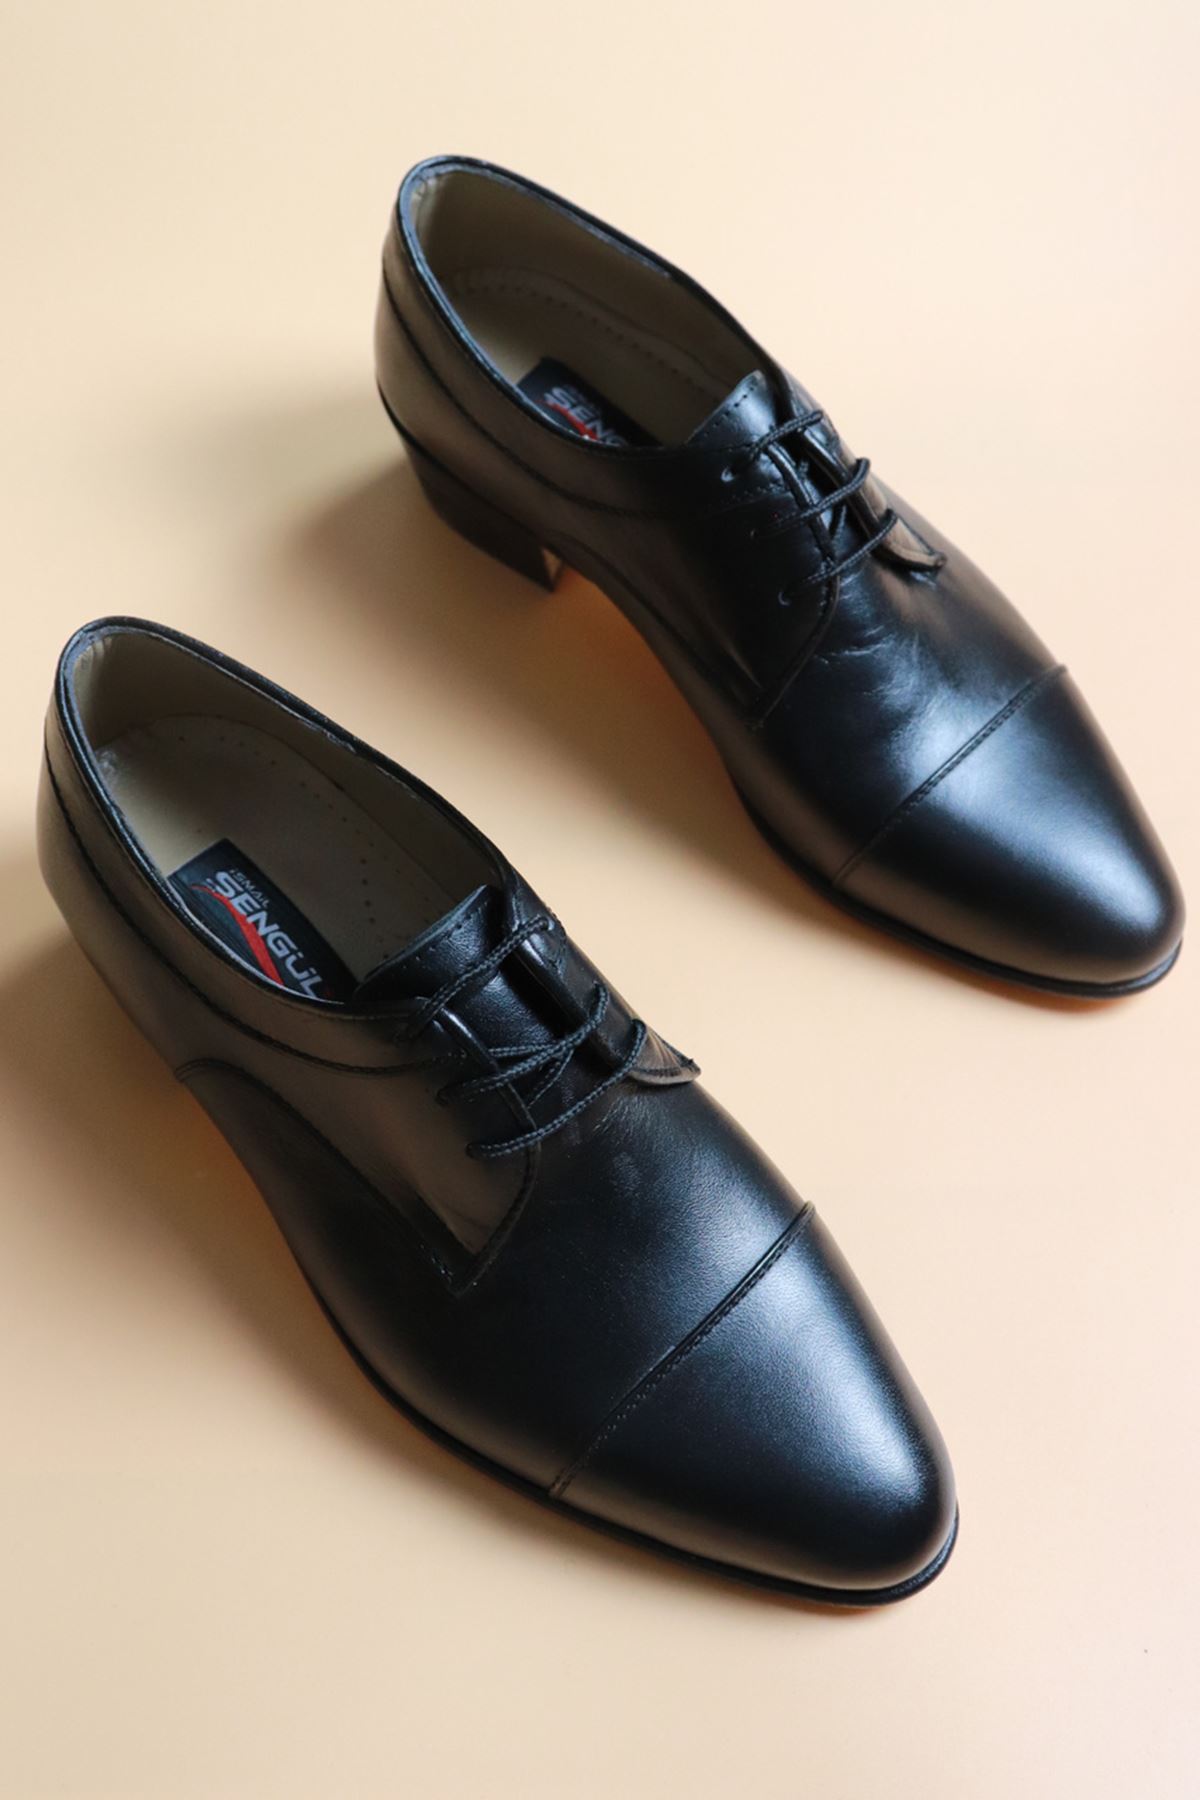 Trendayakkabı - Siyah Bağçıklı Hakiki Deri Yumurta Topuk Erkek Klasik Ayakkabı 